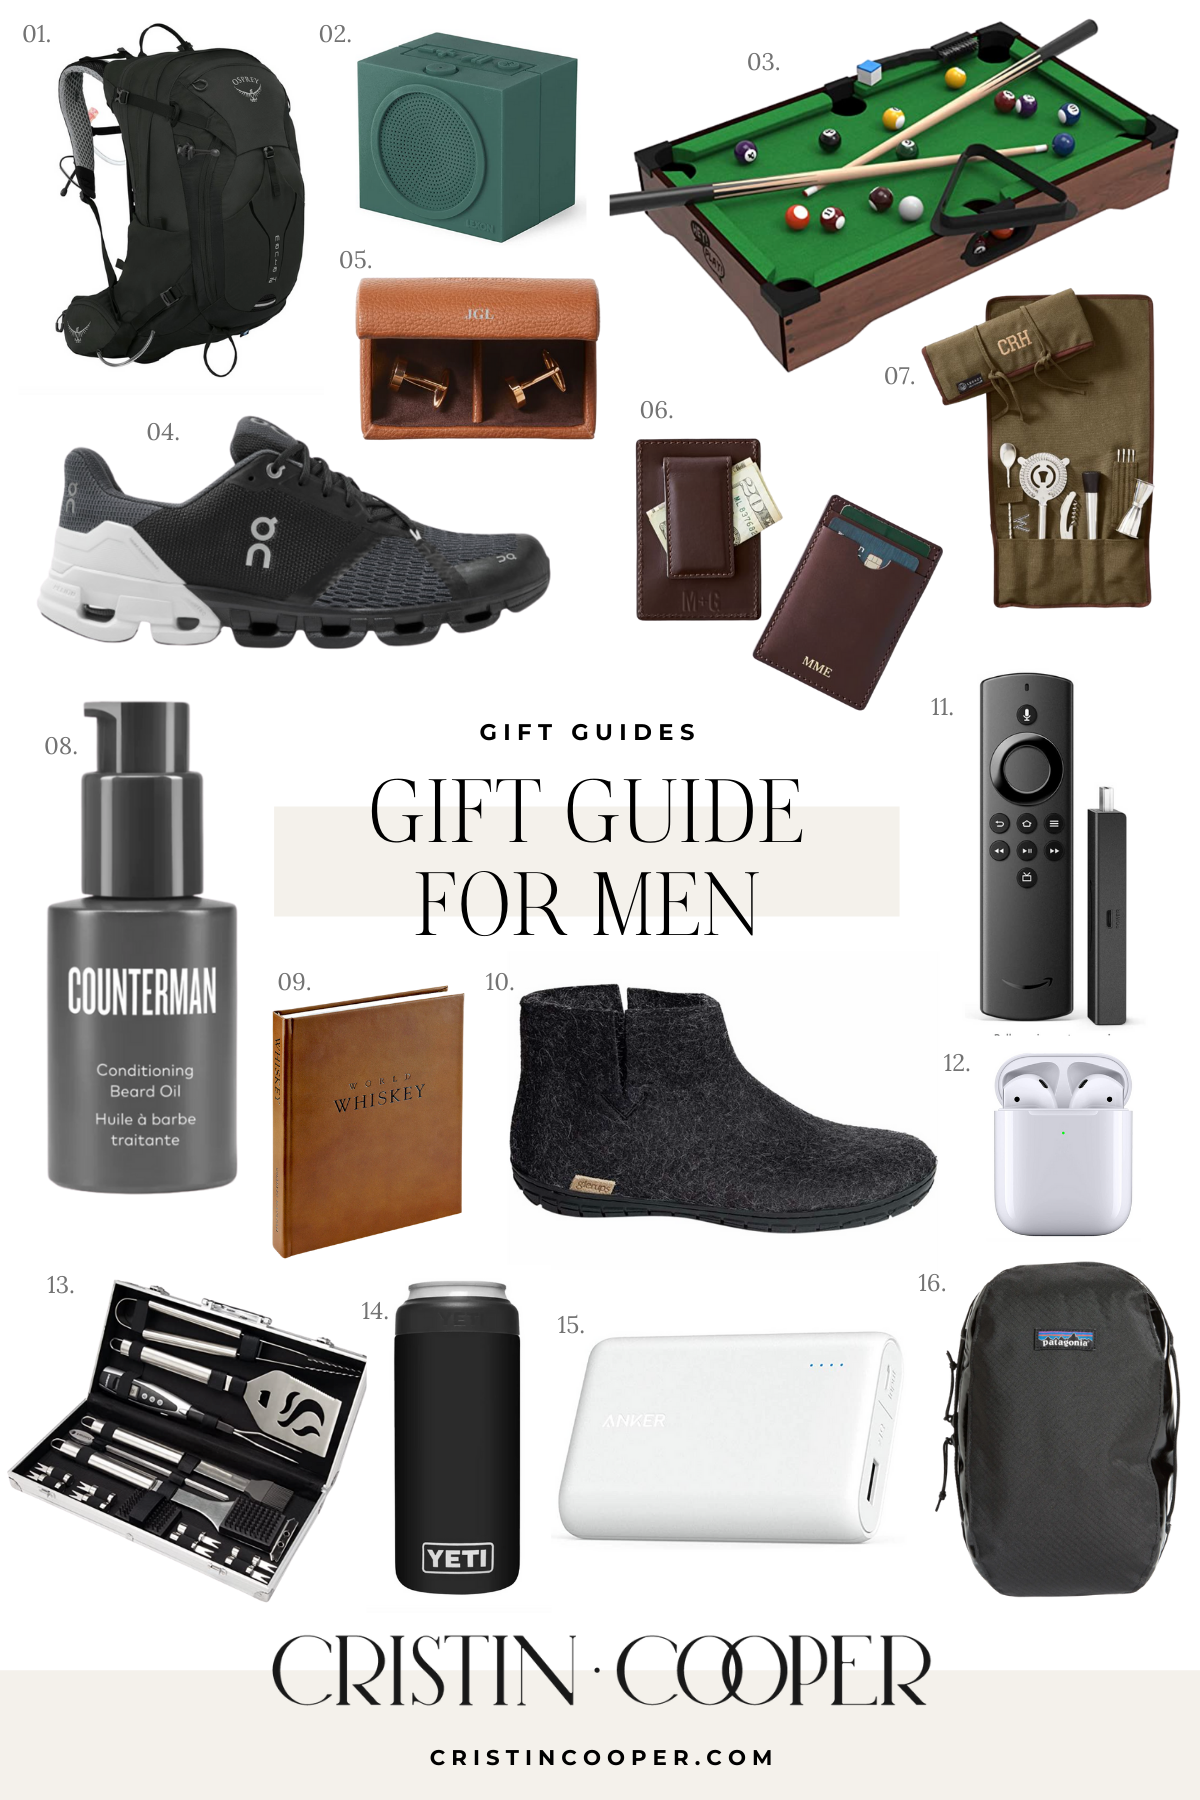 Gift guide for Men